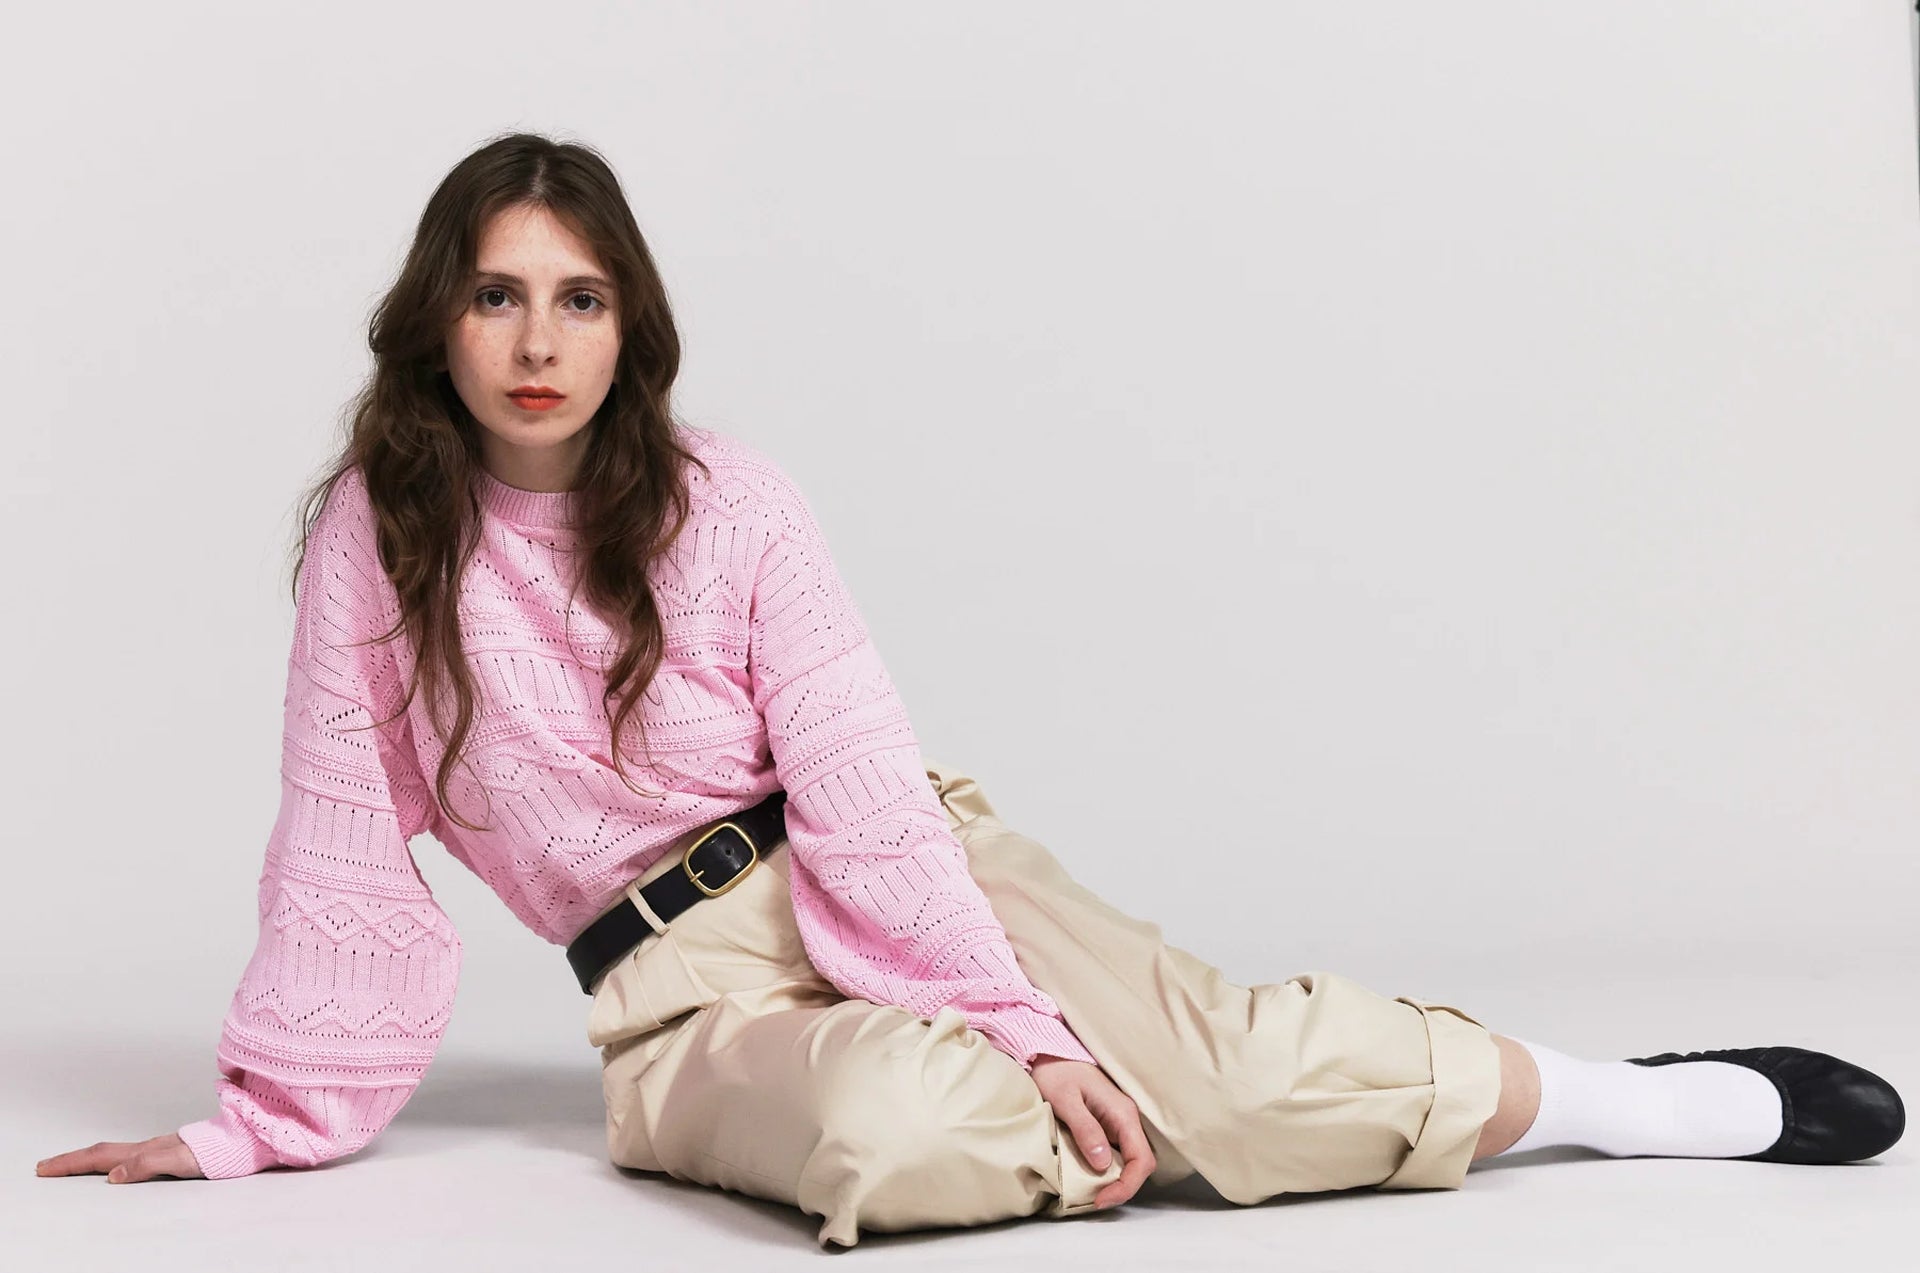 Produit maille Taline manches longues couleur rose tricoté par la marque Parisienne Tricots Jean Marc 1972.